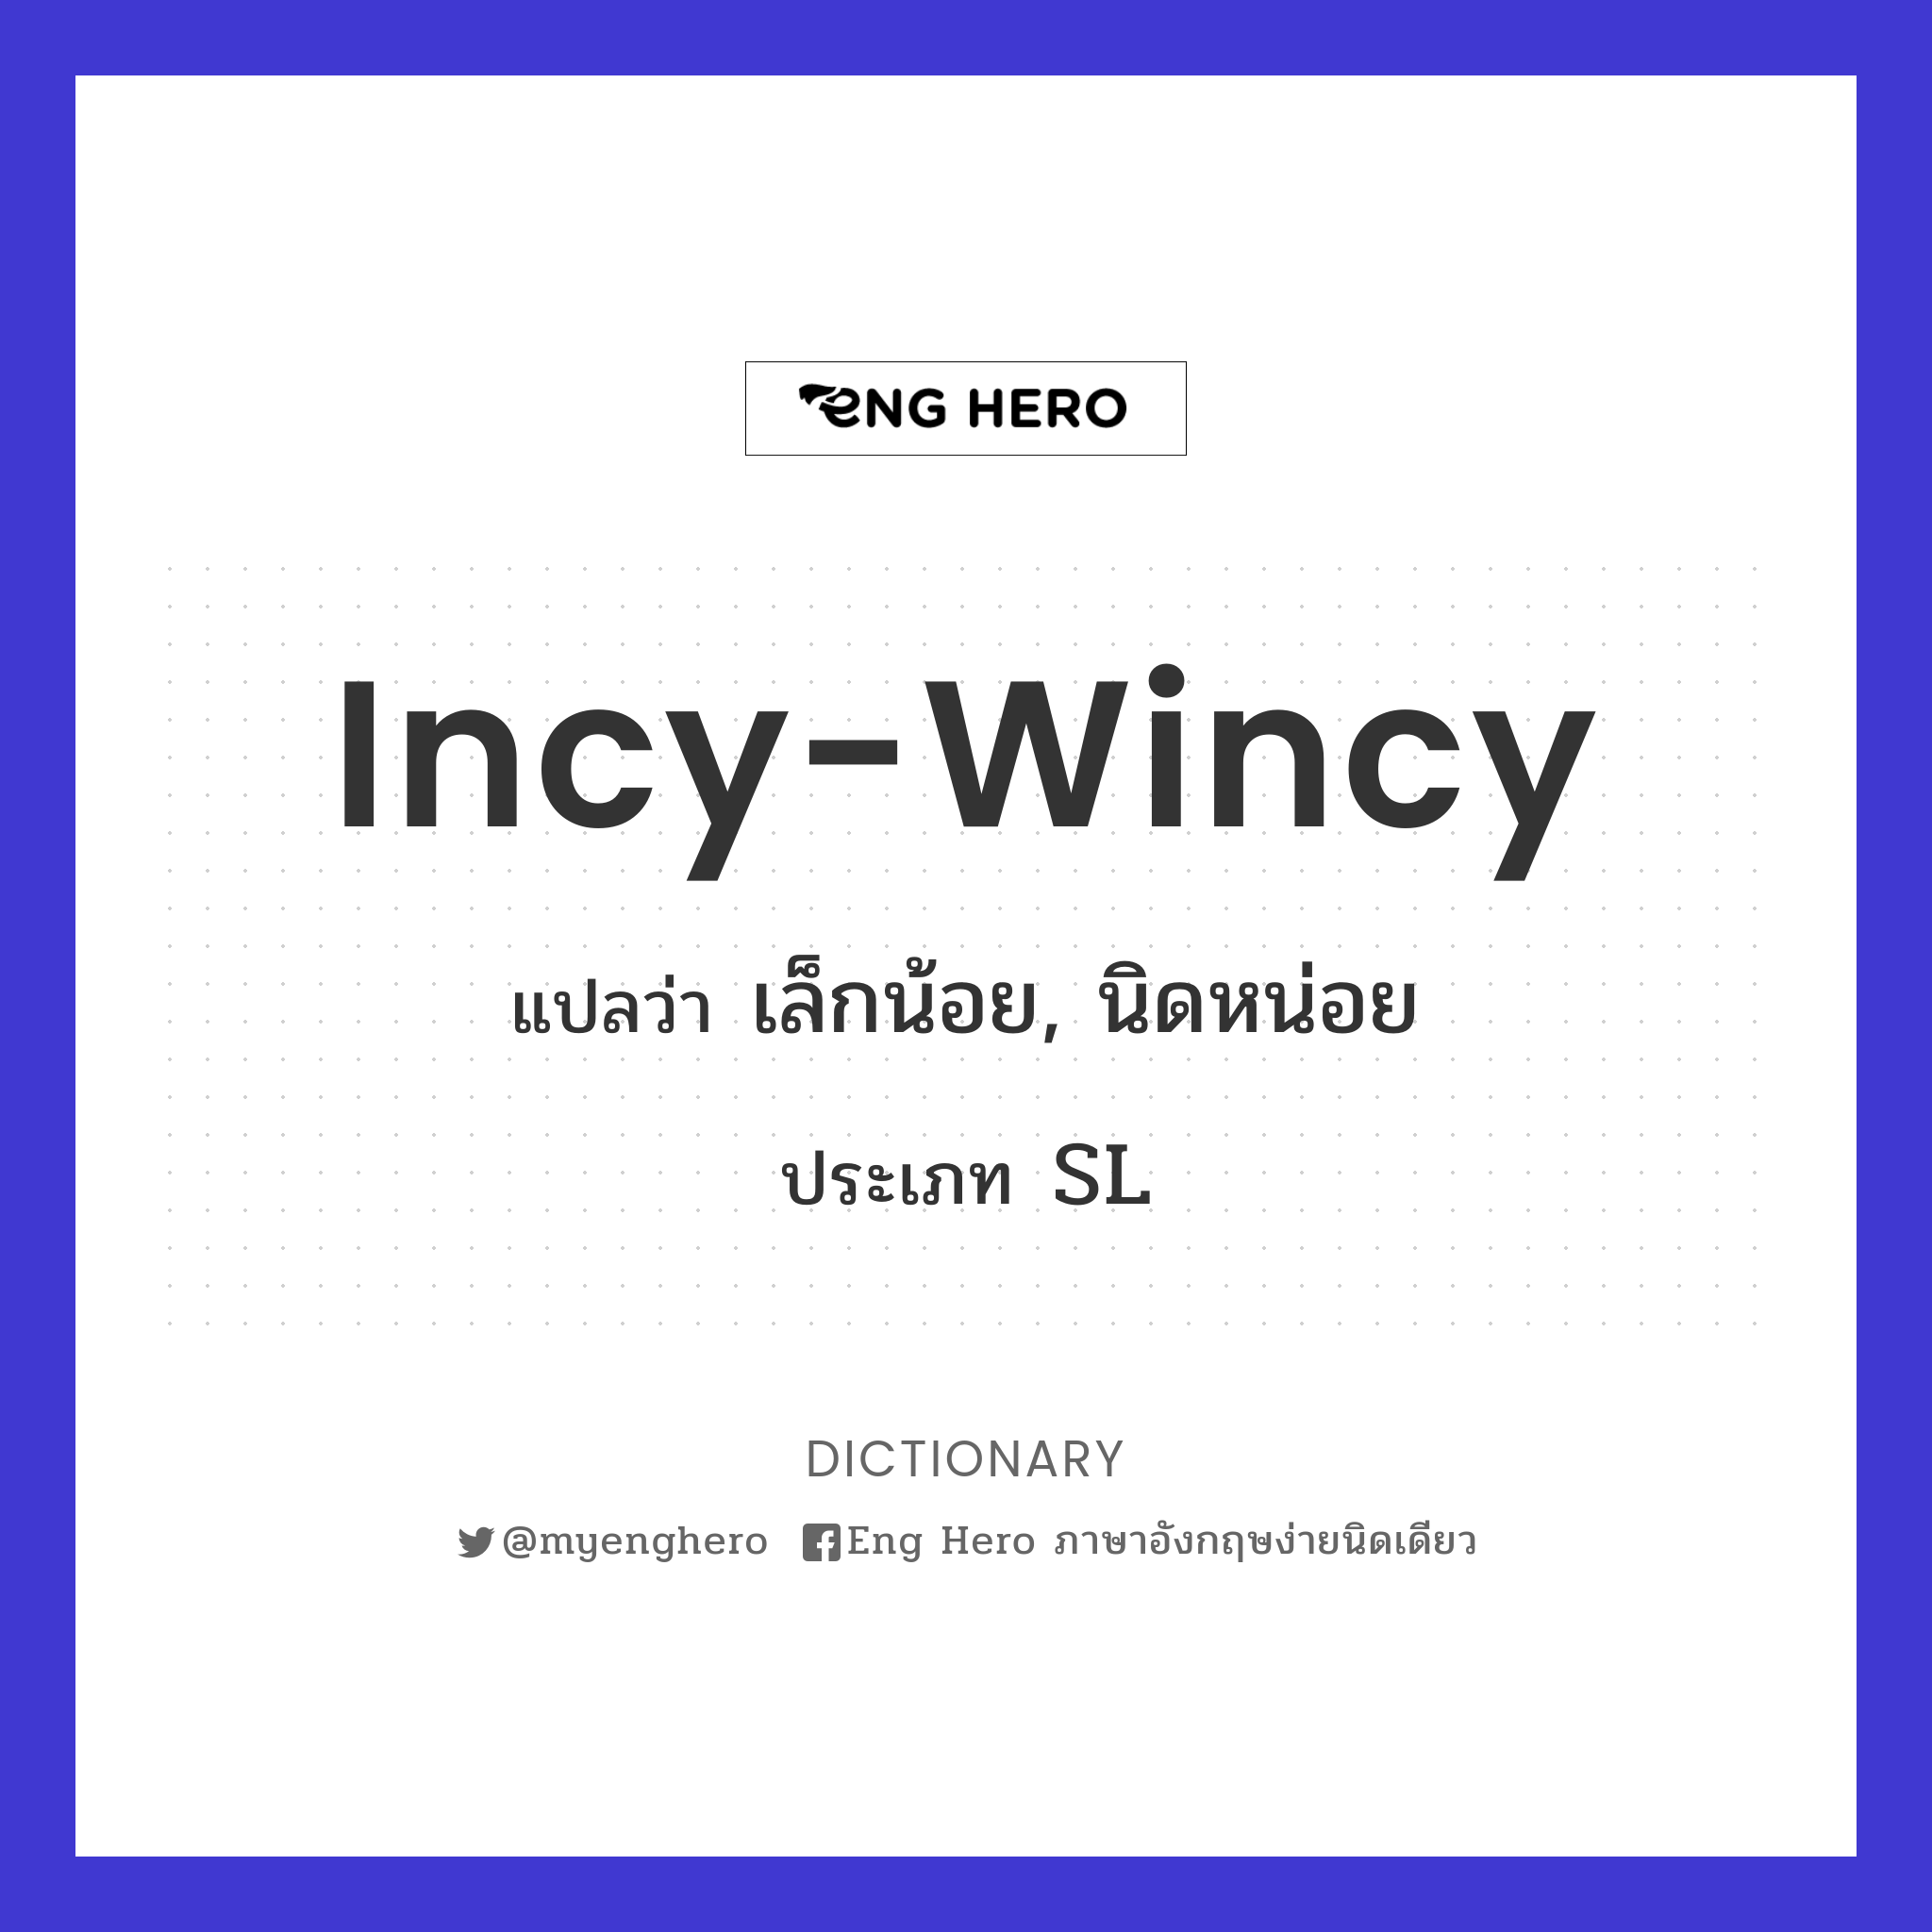 incy-wincy